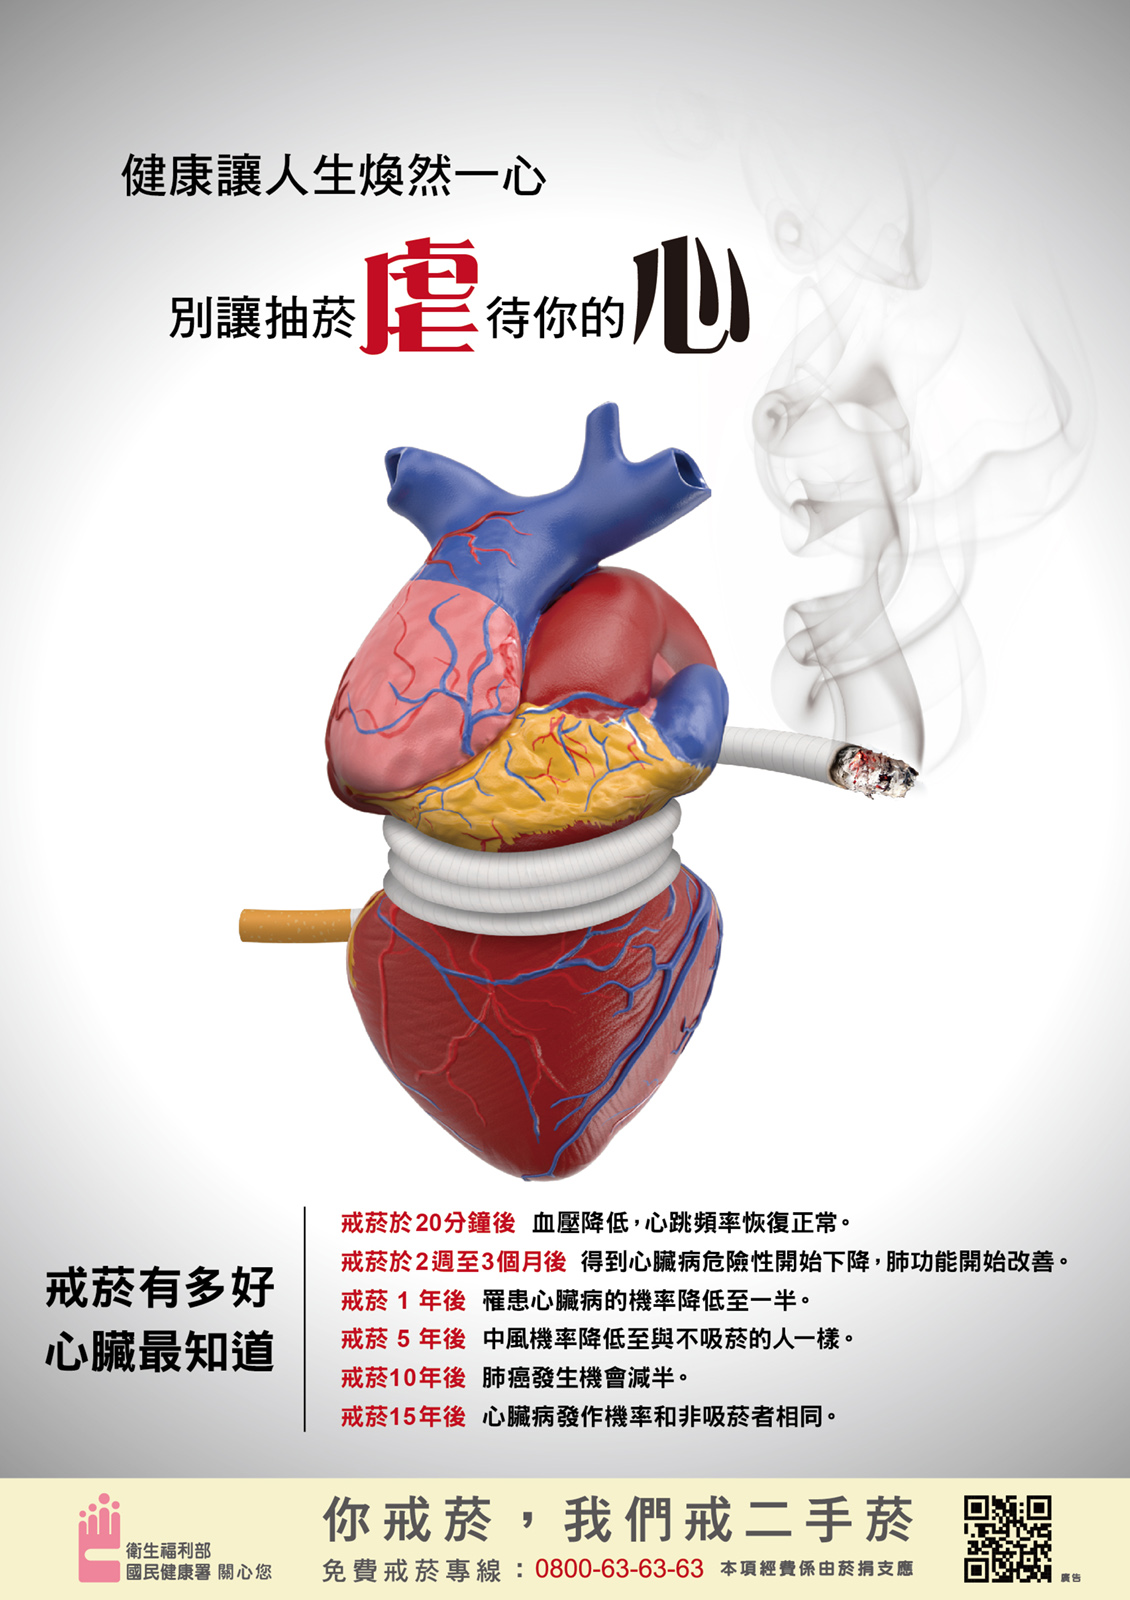 海報心臟篇：健康讓人生煥然一心  別讓抽菸虐待你的心